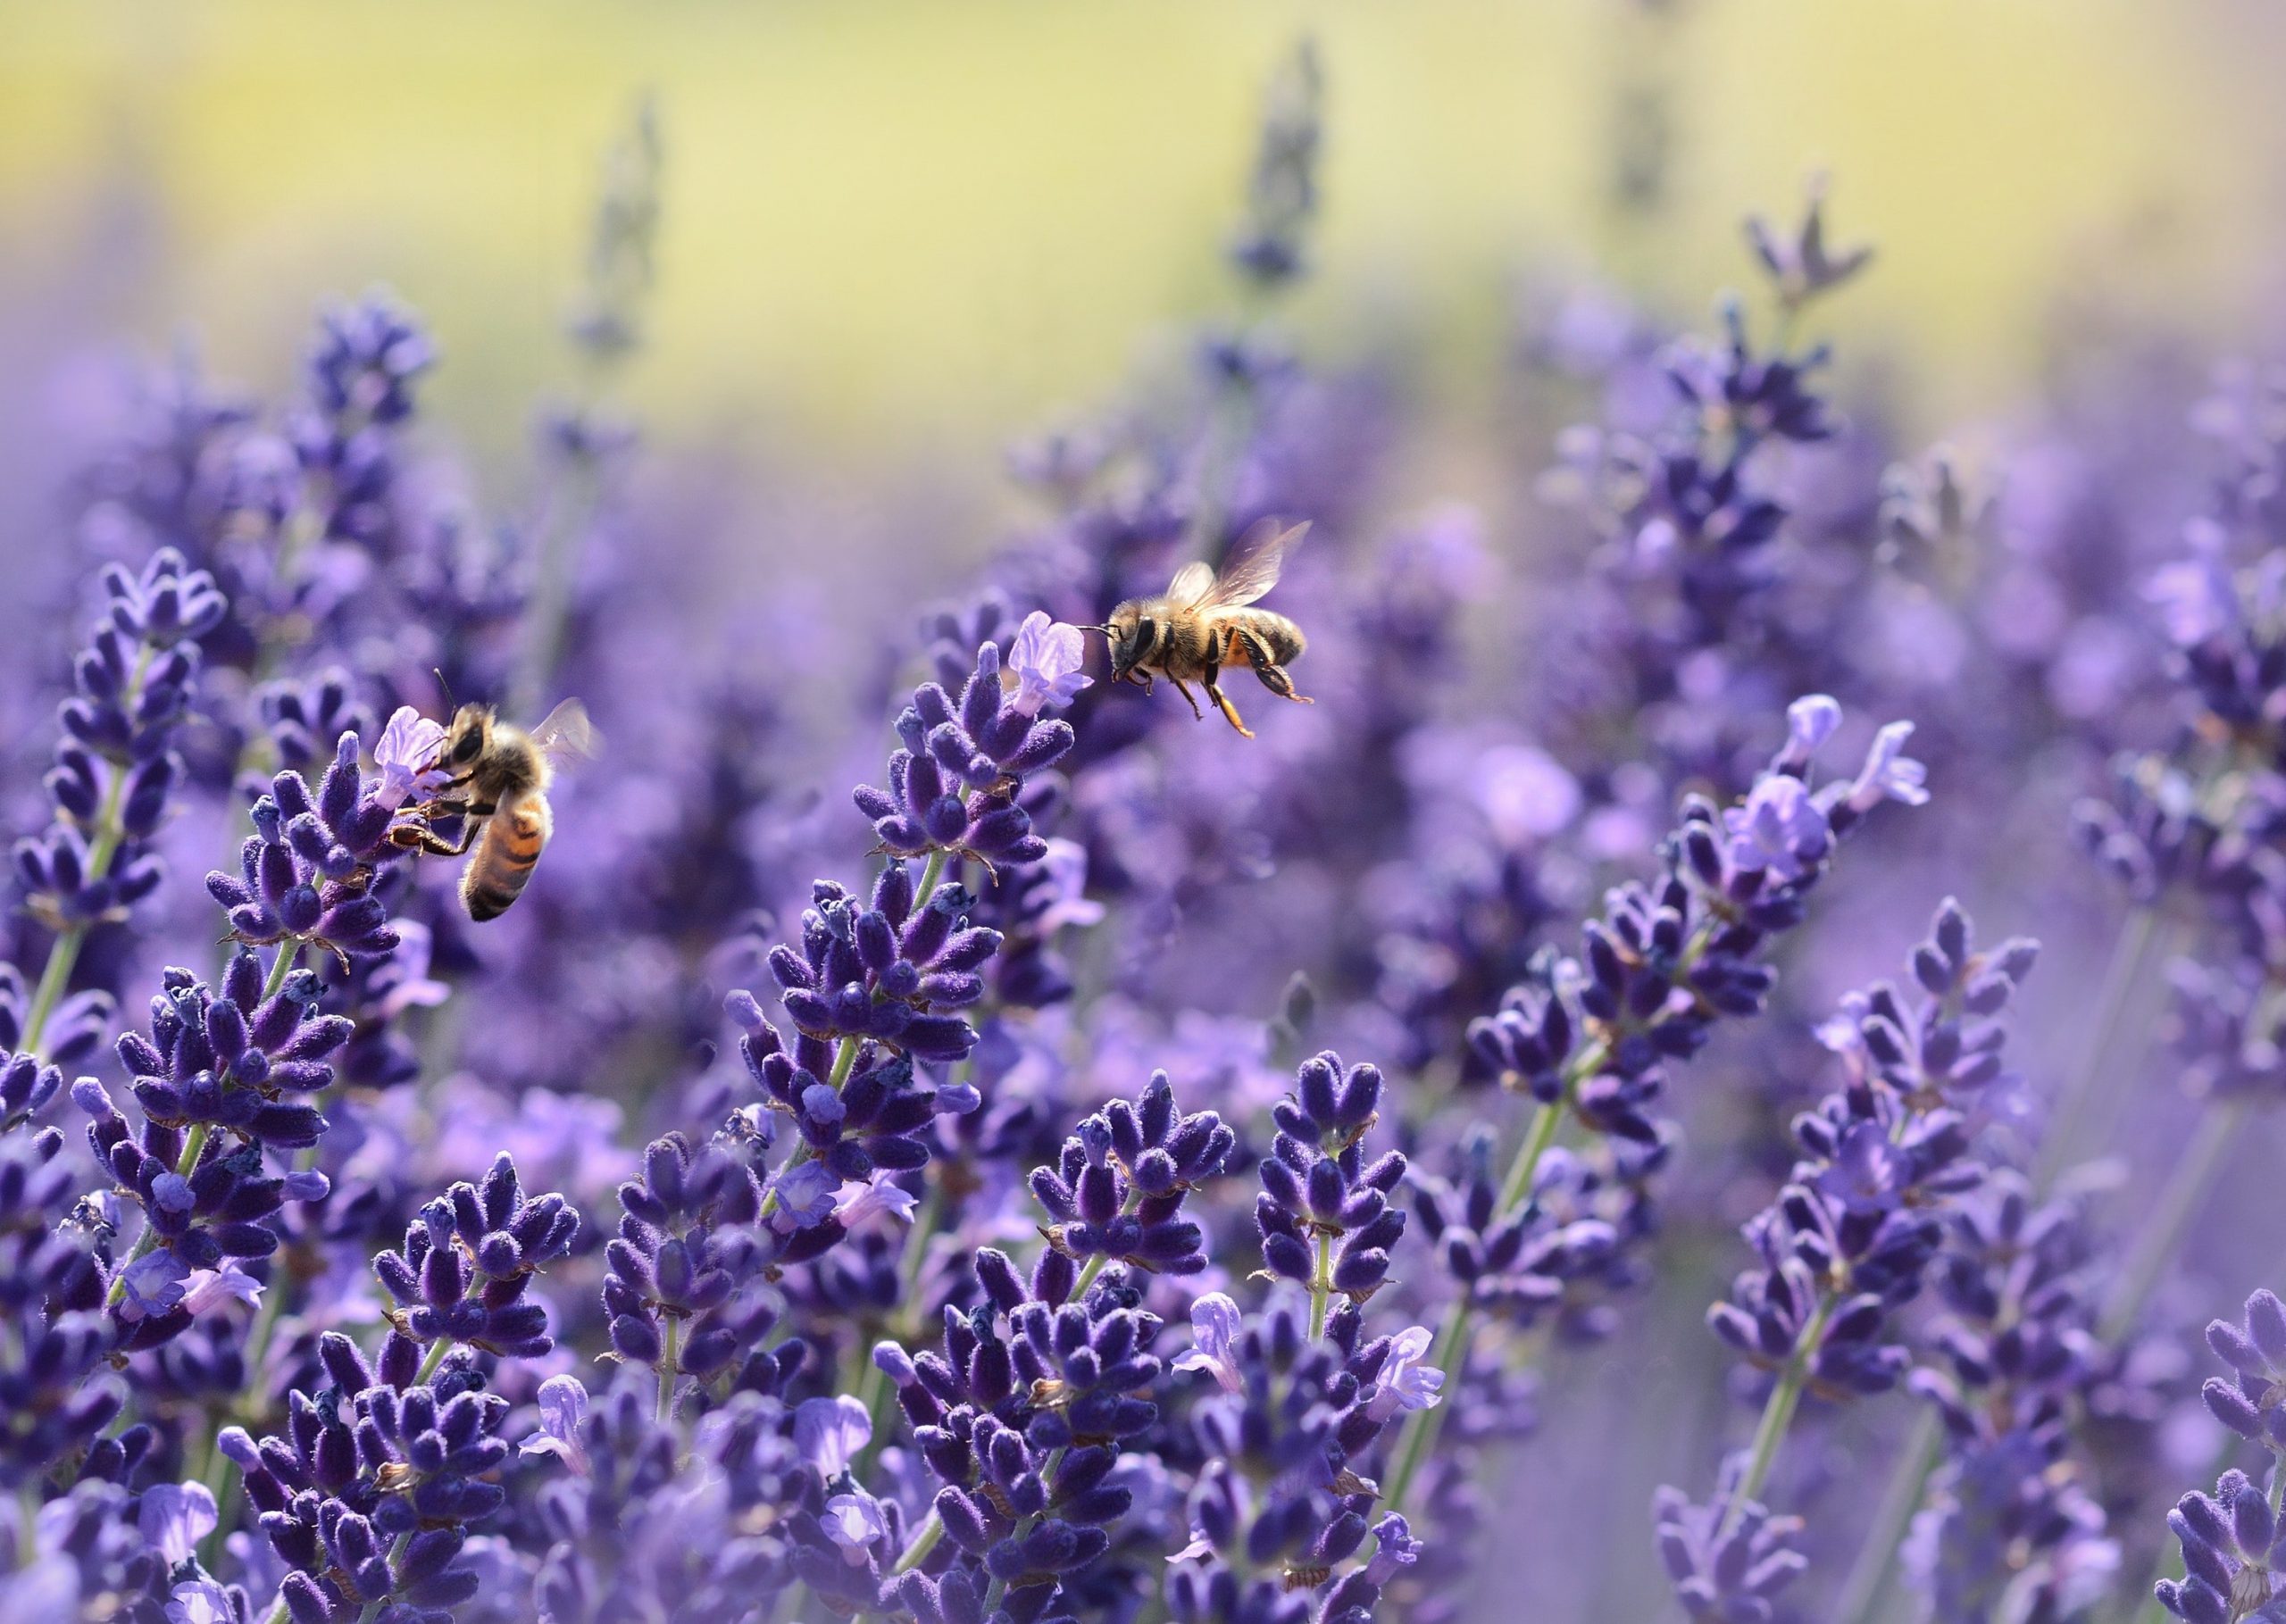 Handbestäubung- Wird die Biene ersetzt?